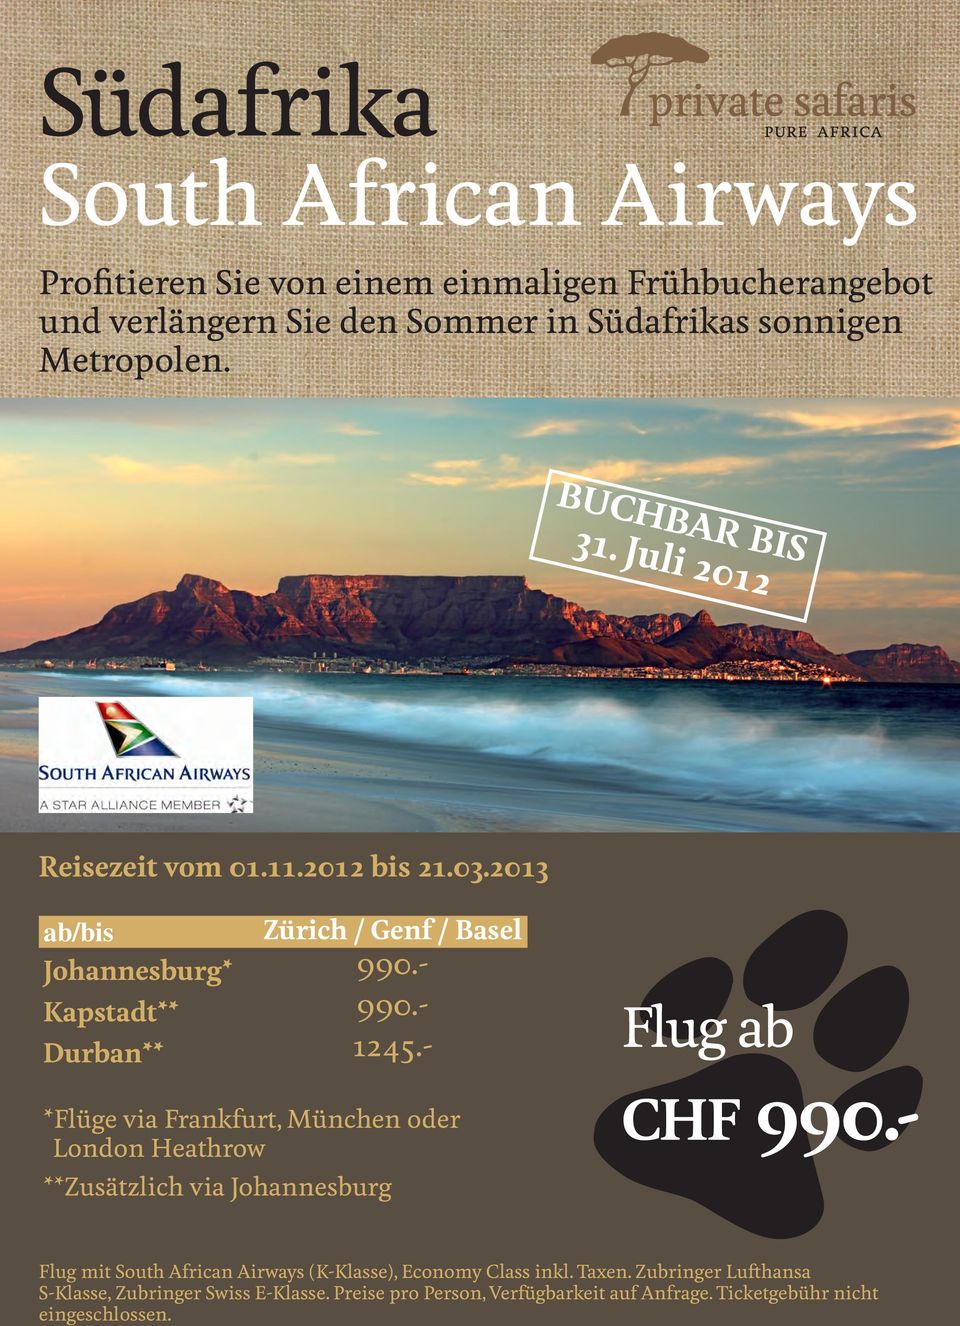 - *Flüge via Frankfurt, München oder London Heathrow **Zusätzlich via Johannesburg Flug ab CHF 990.